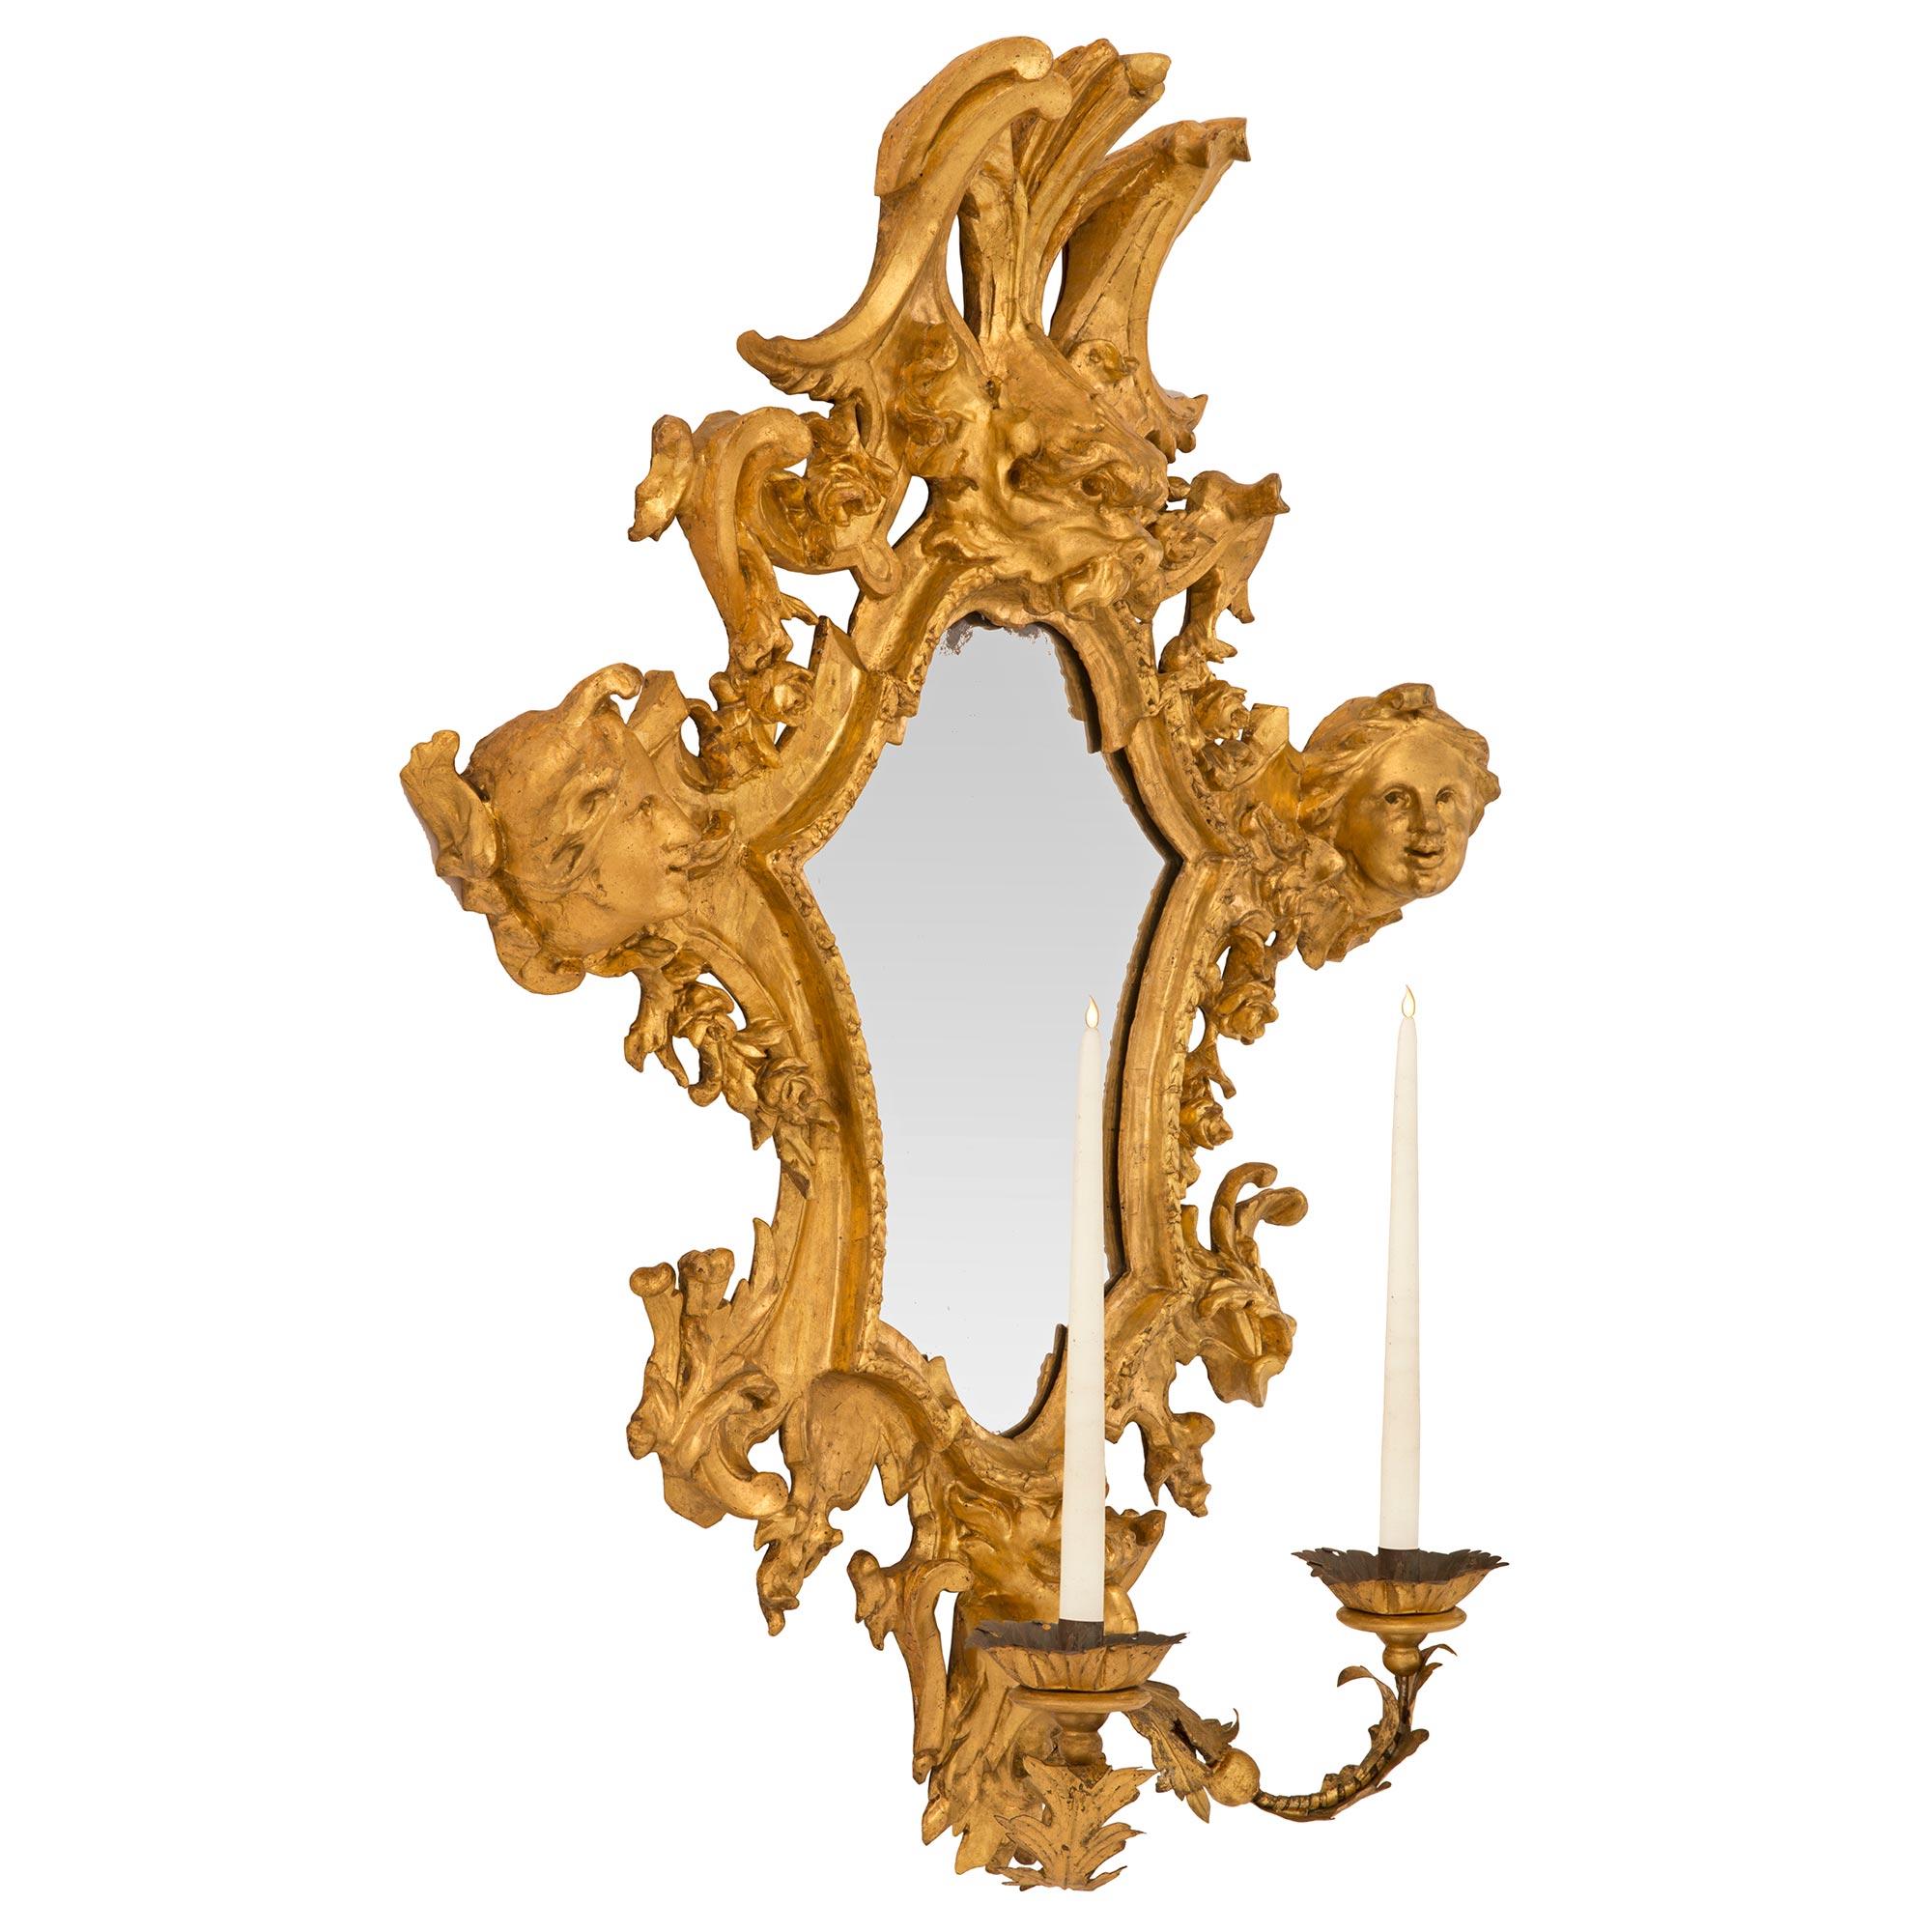 Une paire étonnante et rare d'appliques italiennes en bois doré à miroirs romains de la période baroque du XVIIe siècle. Chaque applique à deux bras conserve sa plaque arrière miroir d'origine, encadrée dans une bordure tachetée élégante et